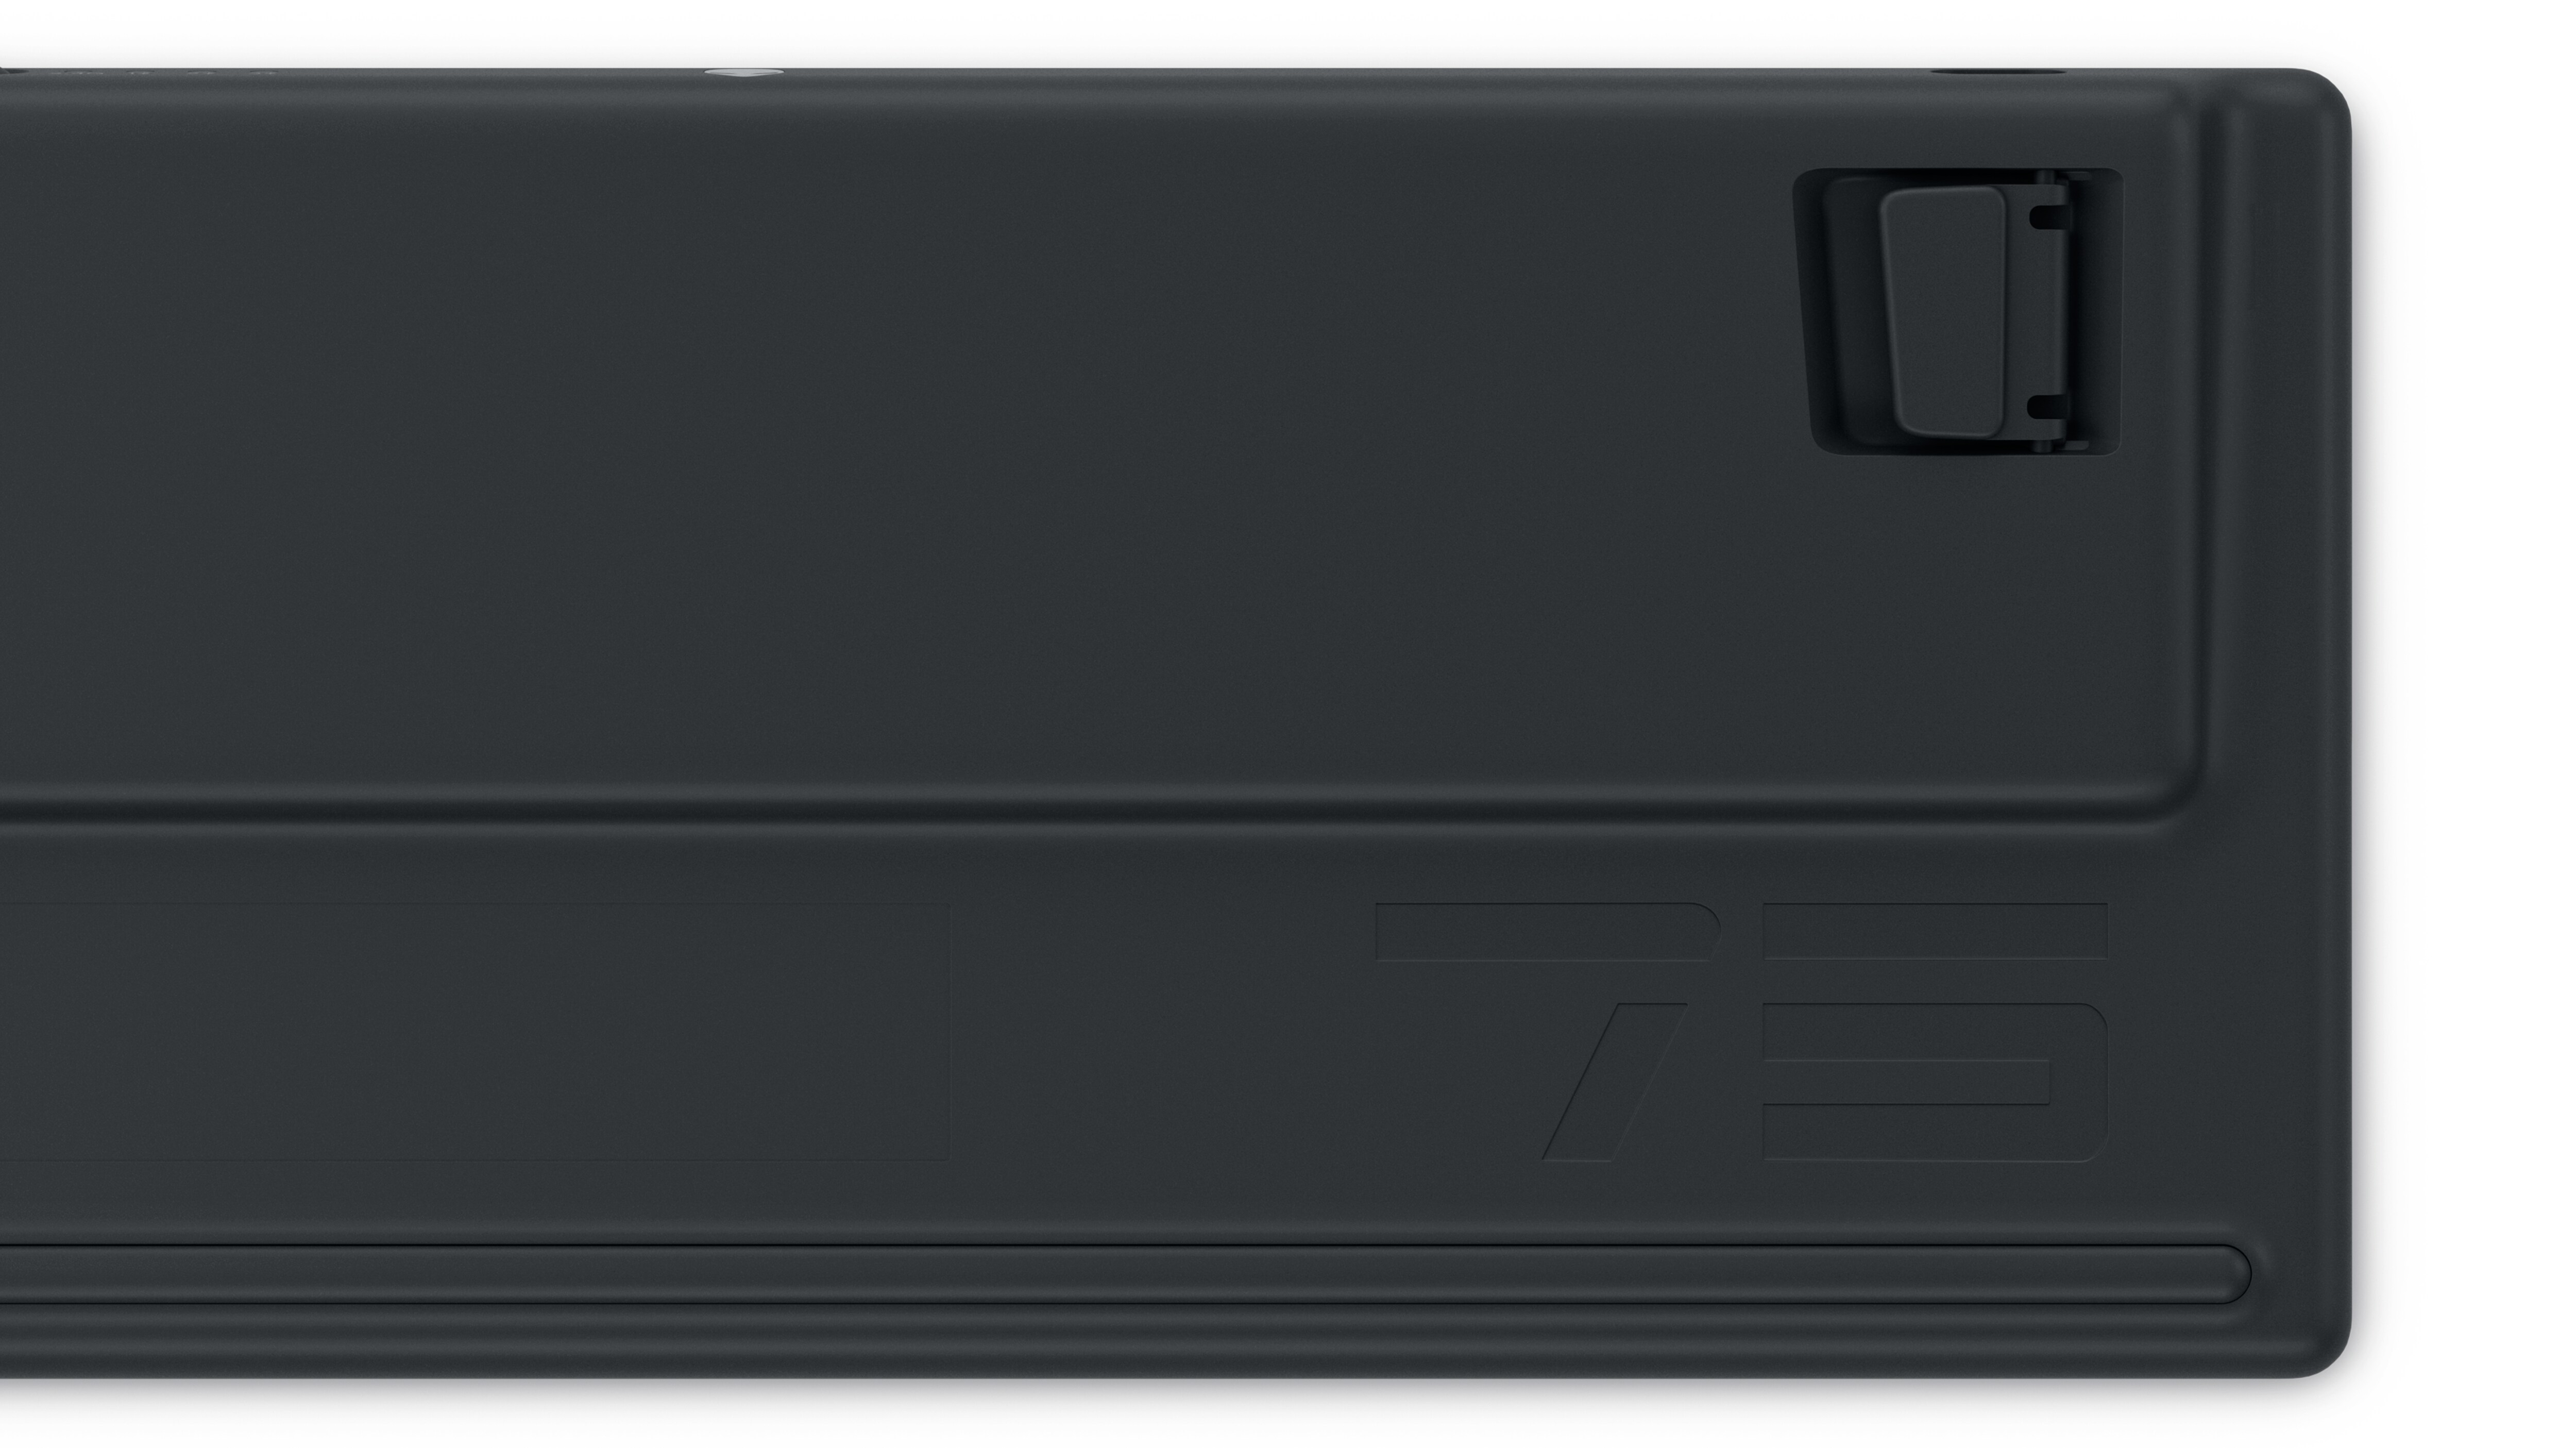 Dell Alienware Proワイヤレス ゲーミング キーボード。製品の背面が示されている。